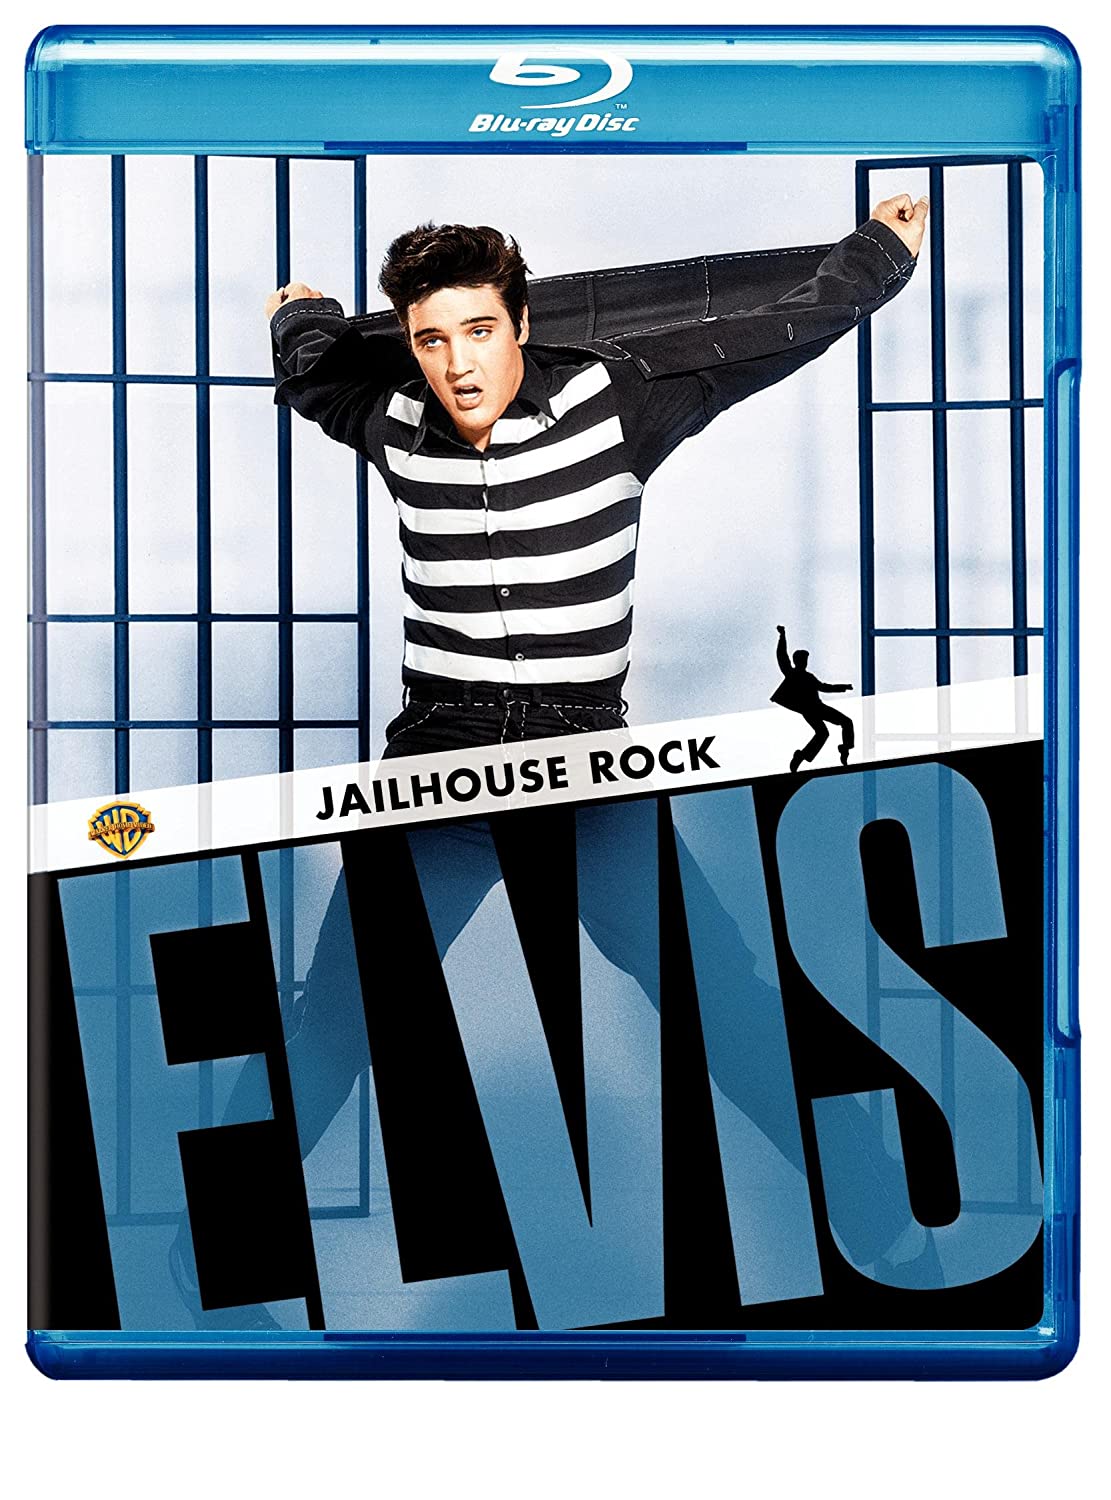 Jailhouse Rock - Blu-ray [ 1957 ]  - Musical Movies On Blu-ray - Movies On GRUV